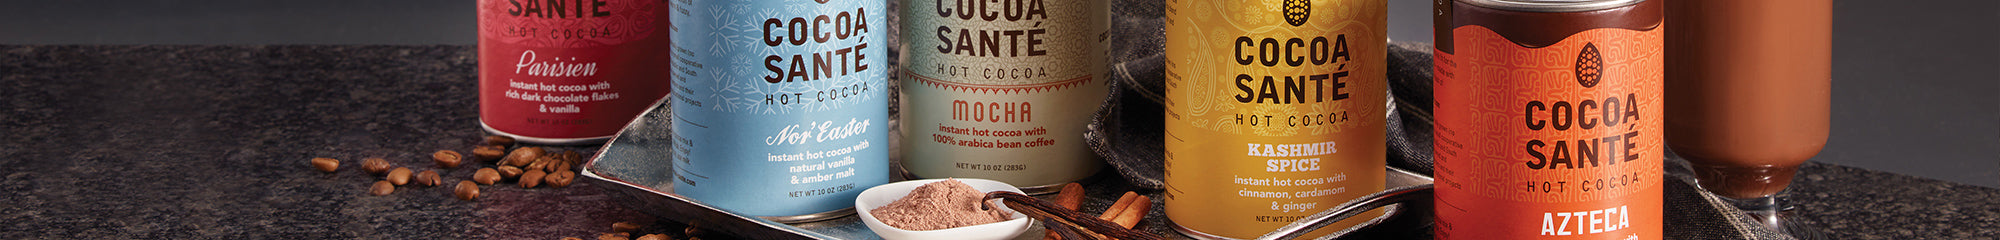 Cocoa Santé | Gourmet Organic Hot Cocoa | Harbor Sweets